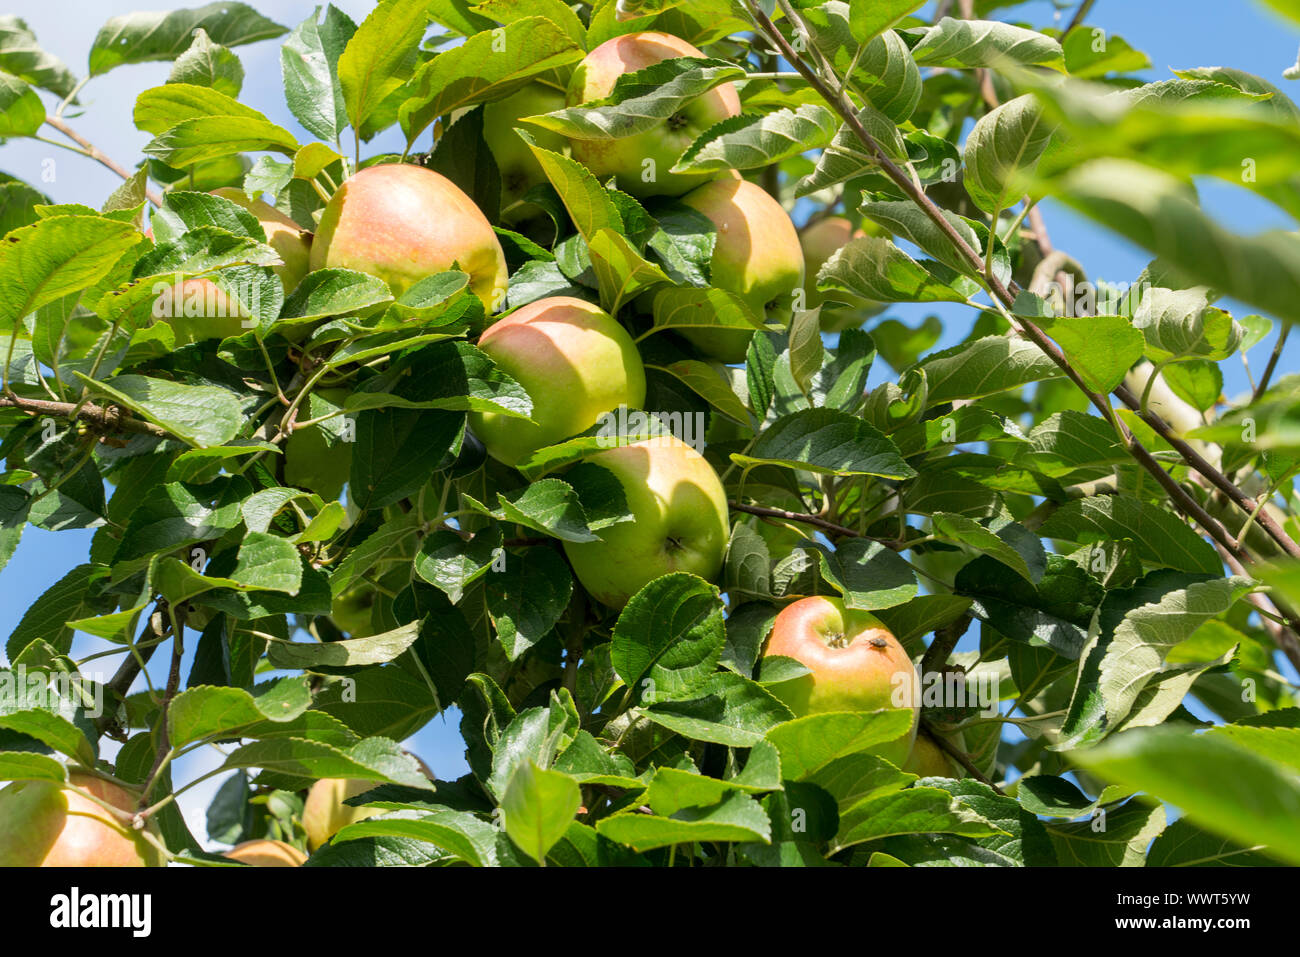 Herbstprinz Finkenwerder, pomme, variété ancienne, l'Allemagne, de l'Europe Banque D'Images